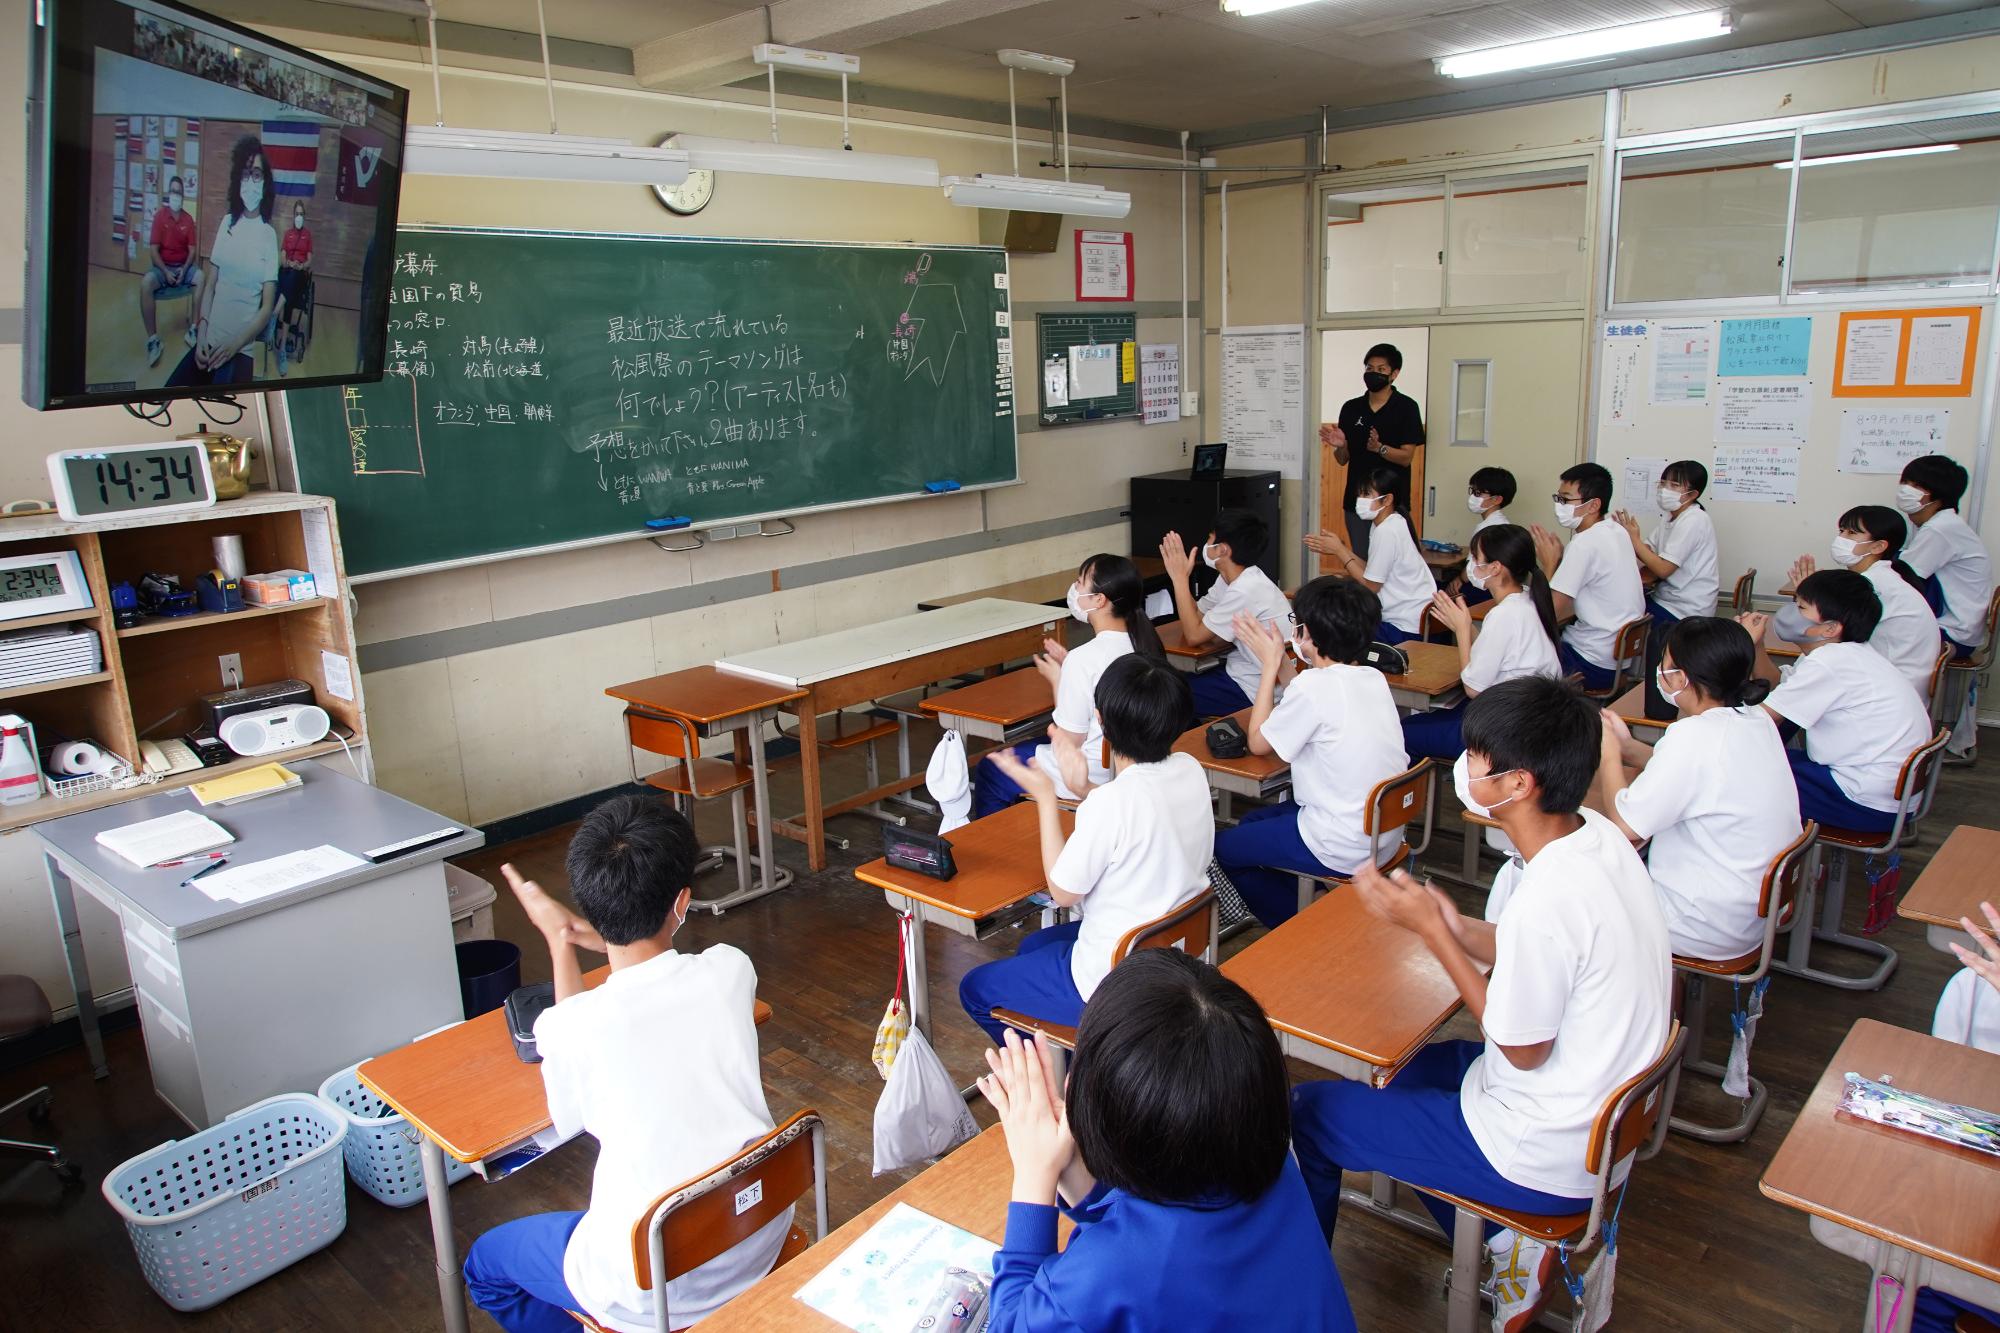 松川中学校ではオンライン講演会を開催